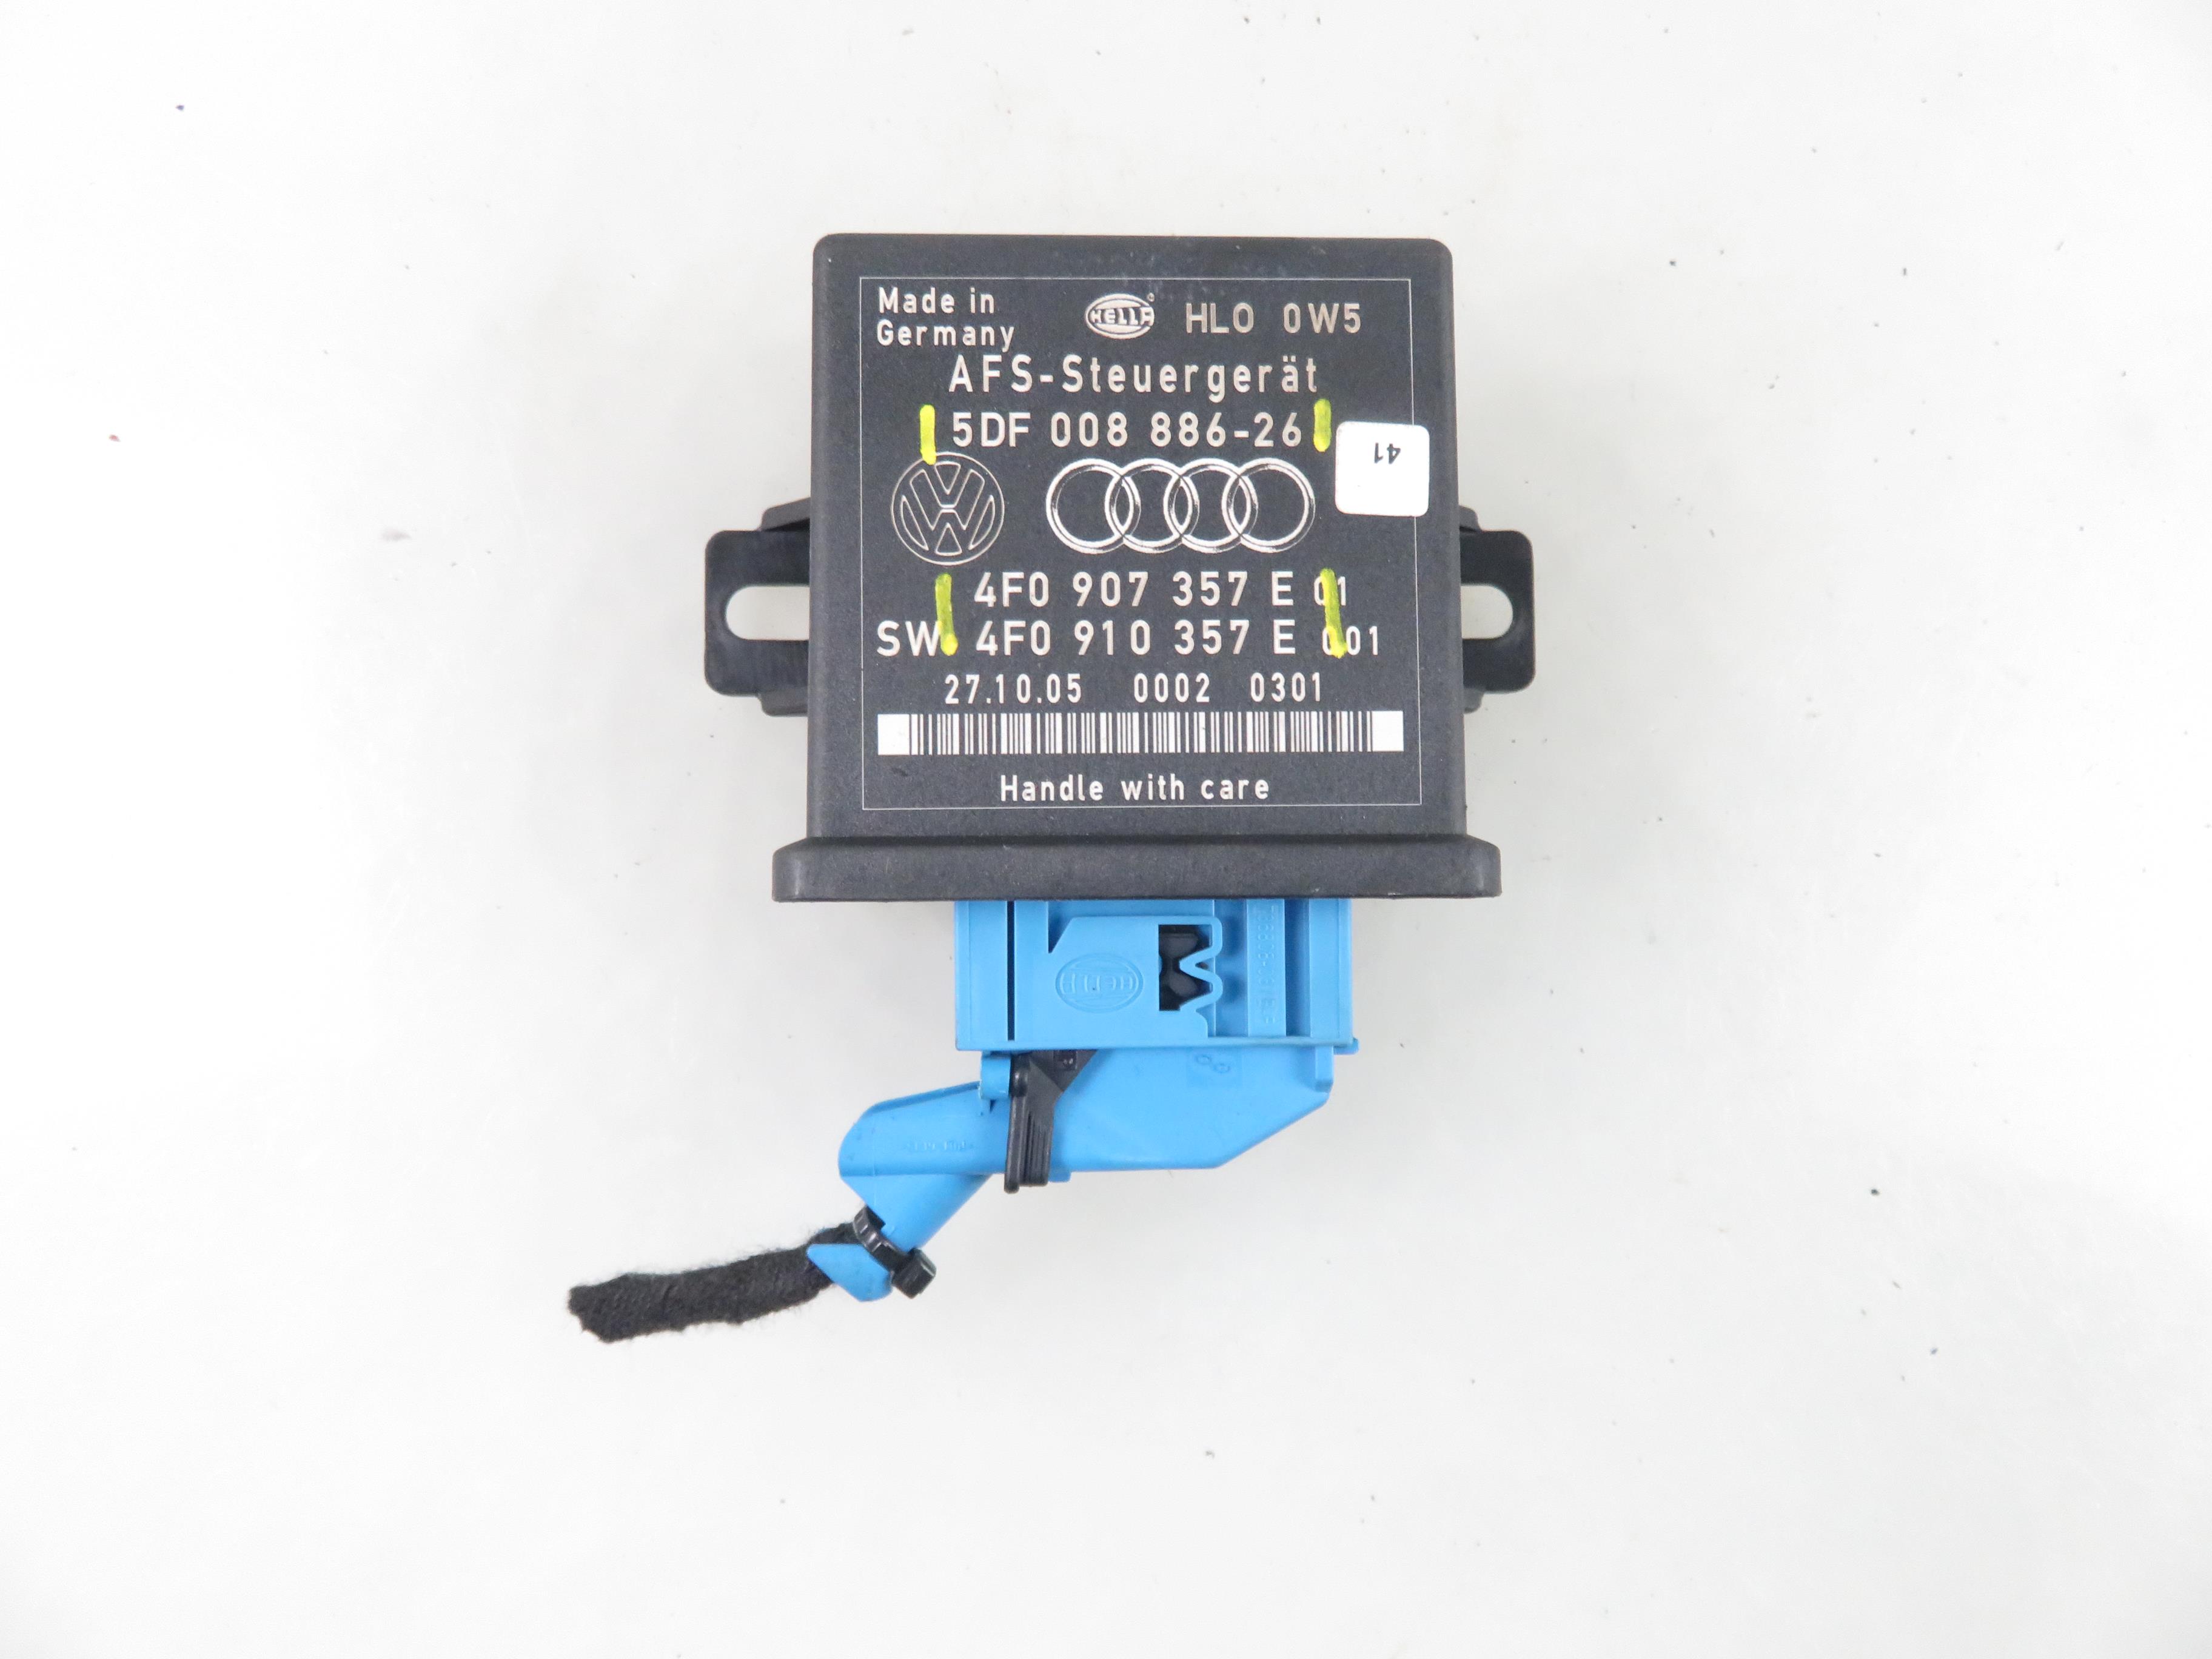 AUDI Q7 4L (2005-2015) Lukturu vadības bloks 5DF00888626, 4F0910357E, 4F0907357E 25301335